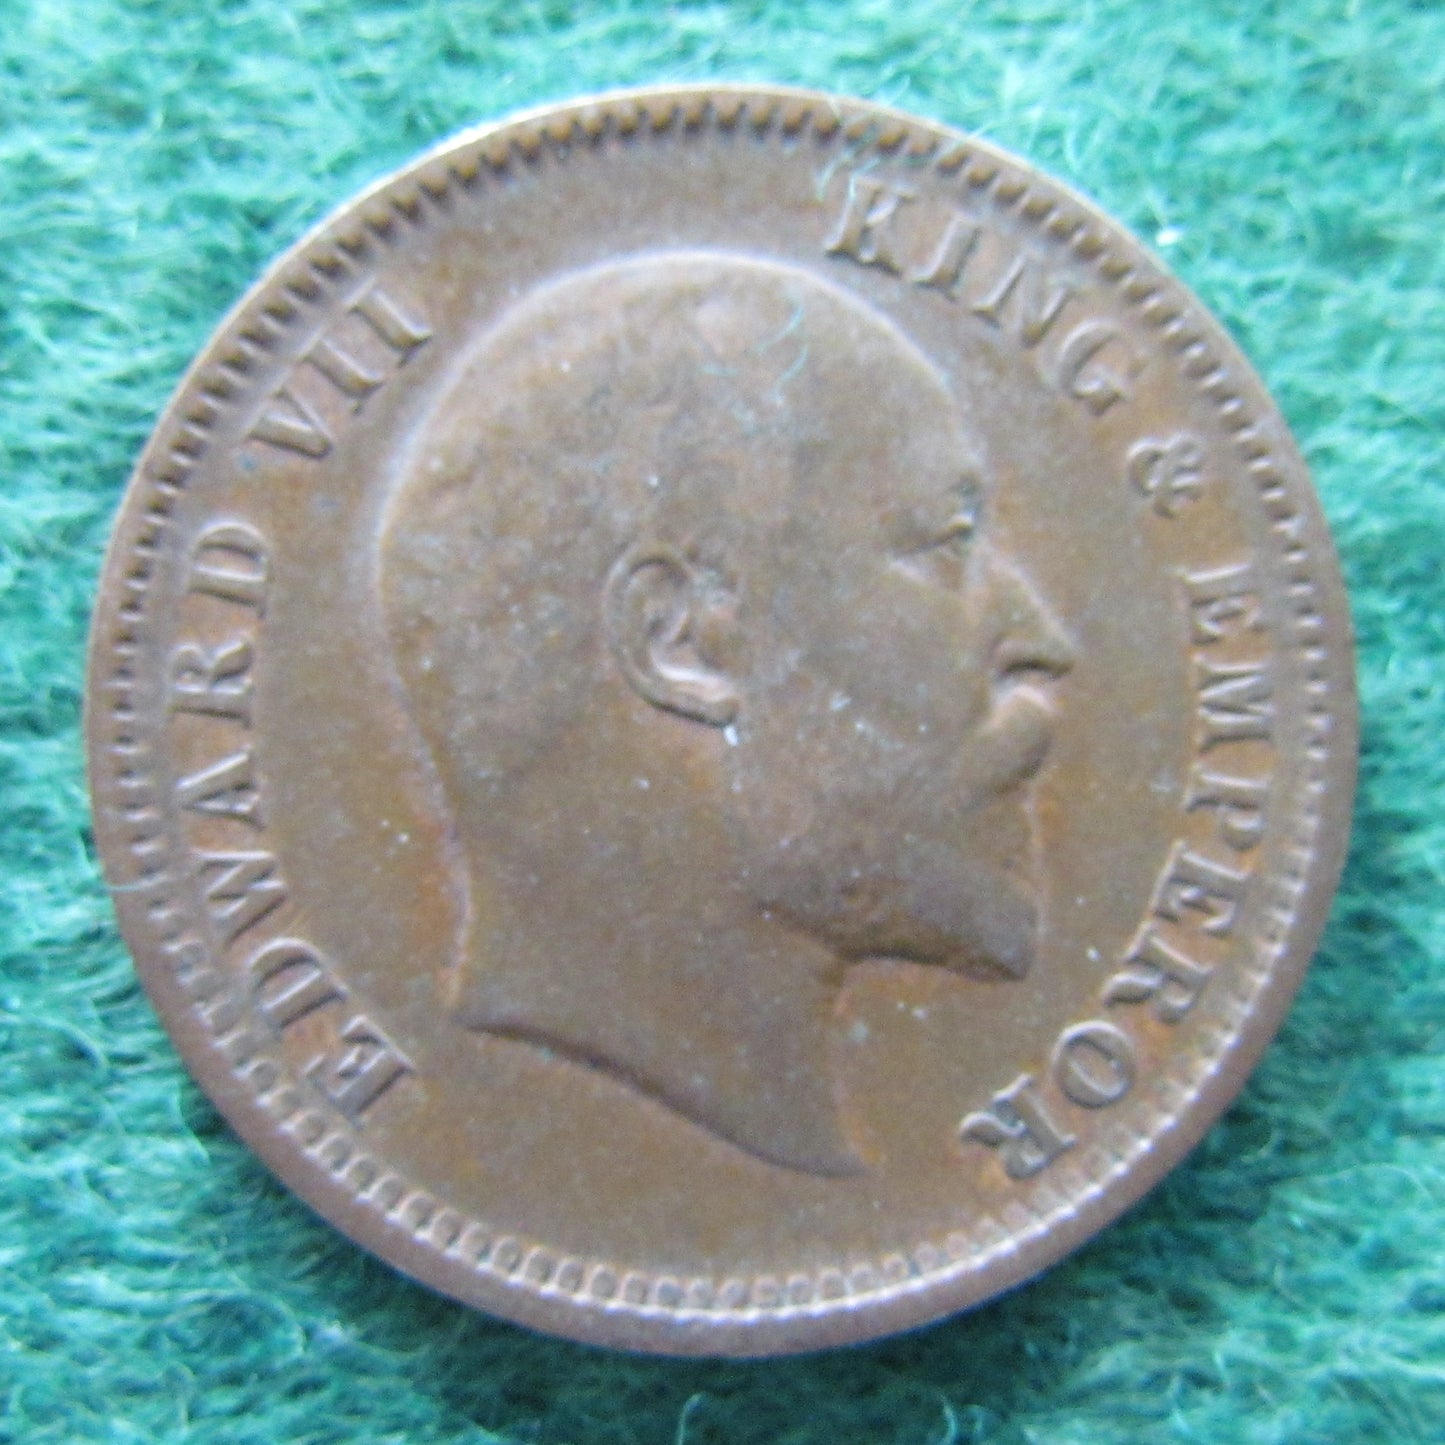 India 1907 1/4 Anna Coin